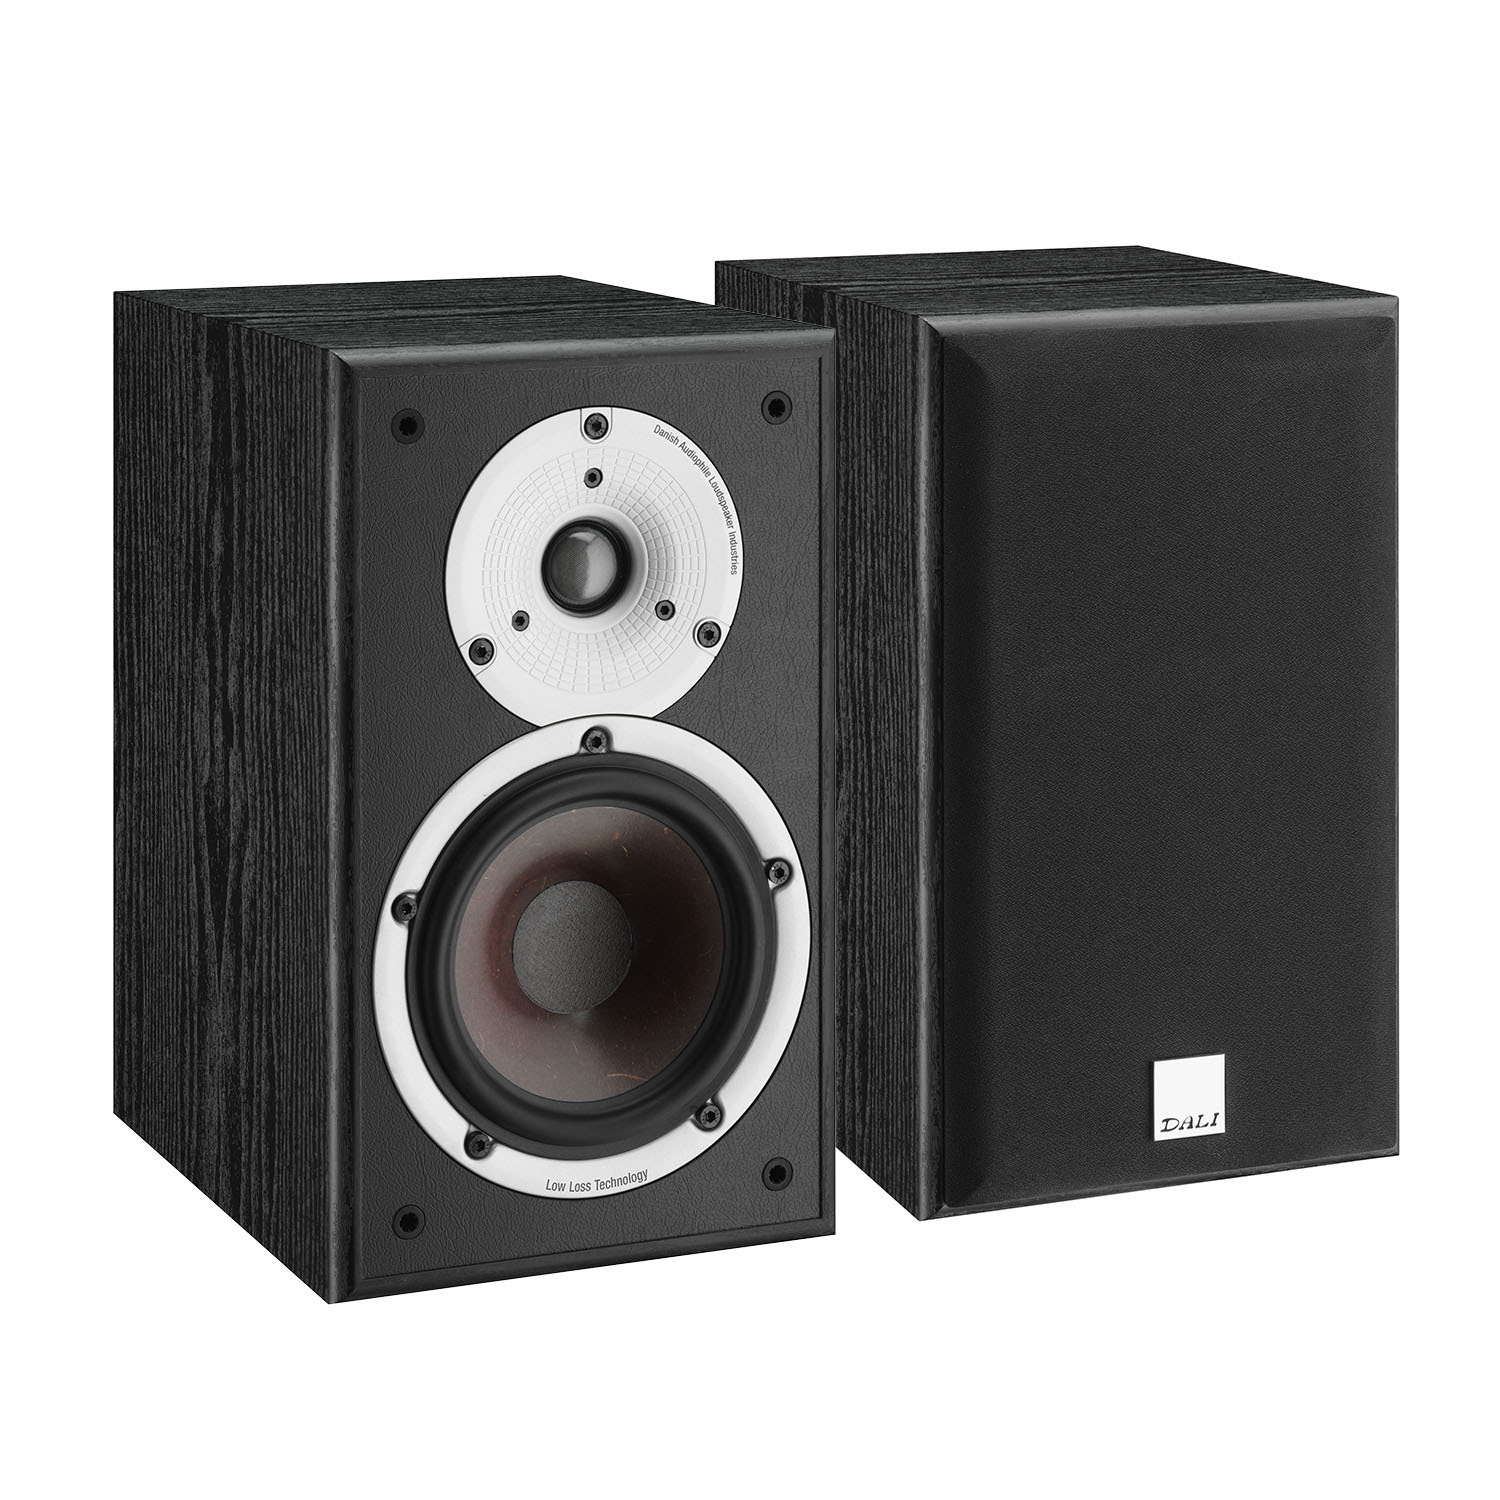 DALI Zensor 3 - полочная акустика | Купить в магазине Аудиомания